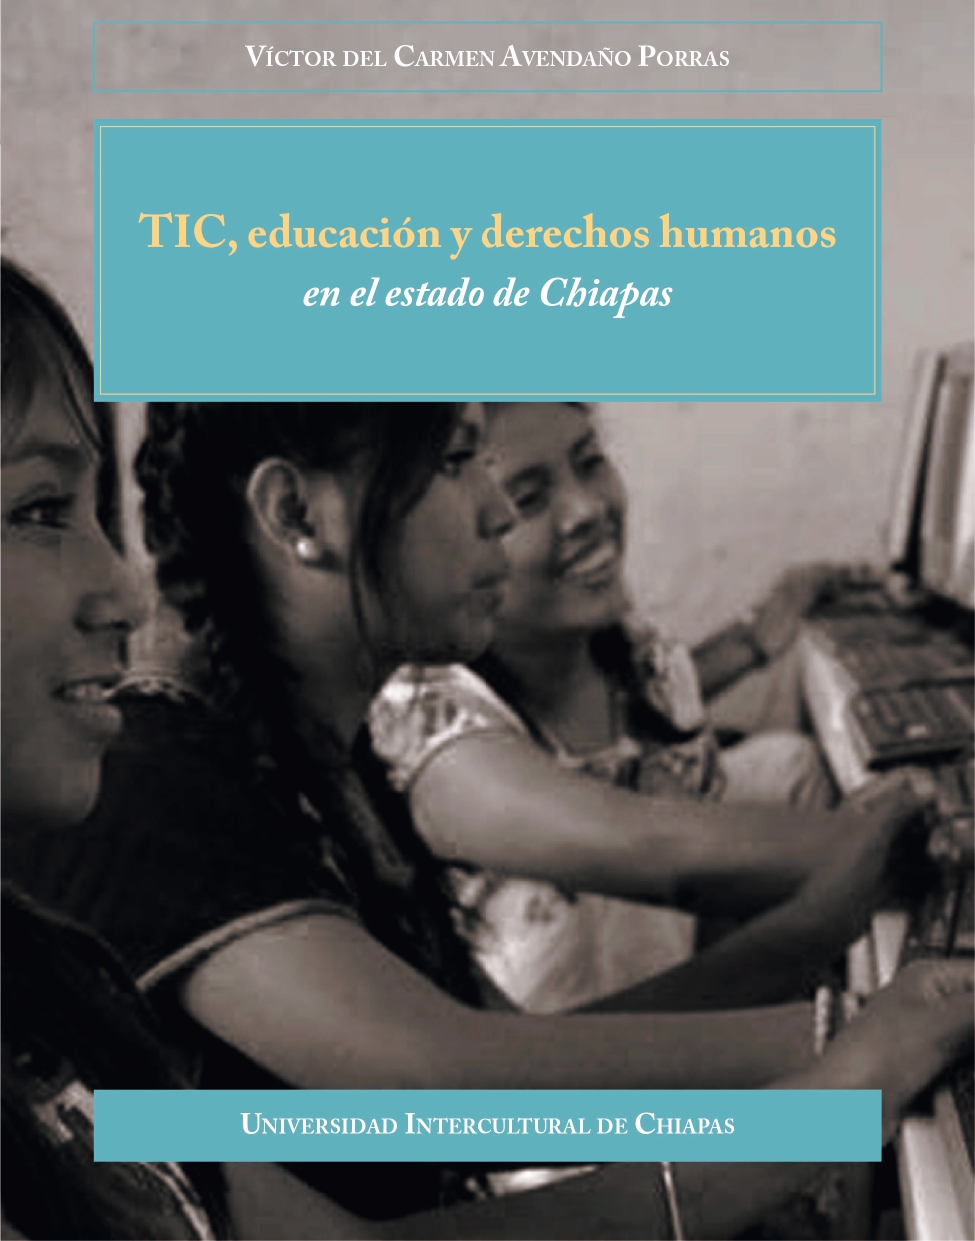 TIC, educación y derechos humanos en el estado de Chiapas